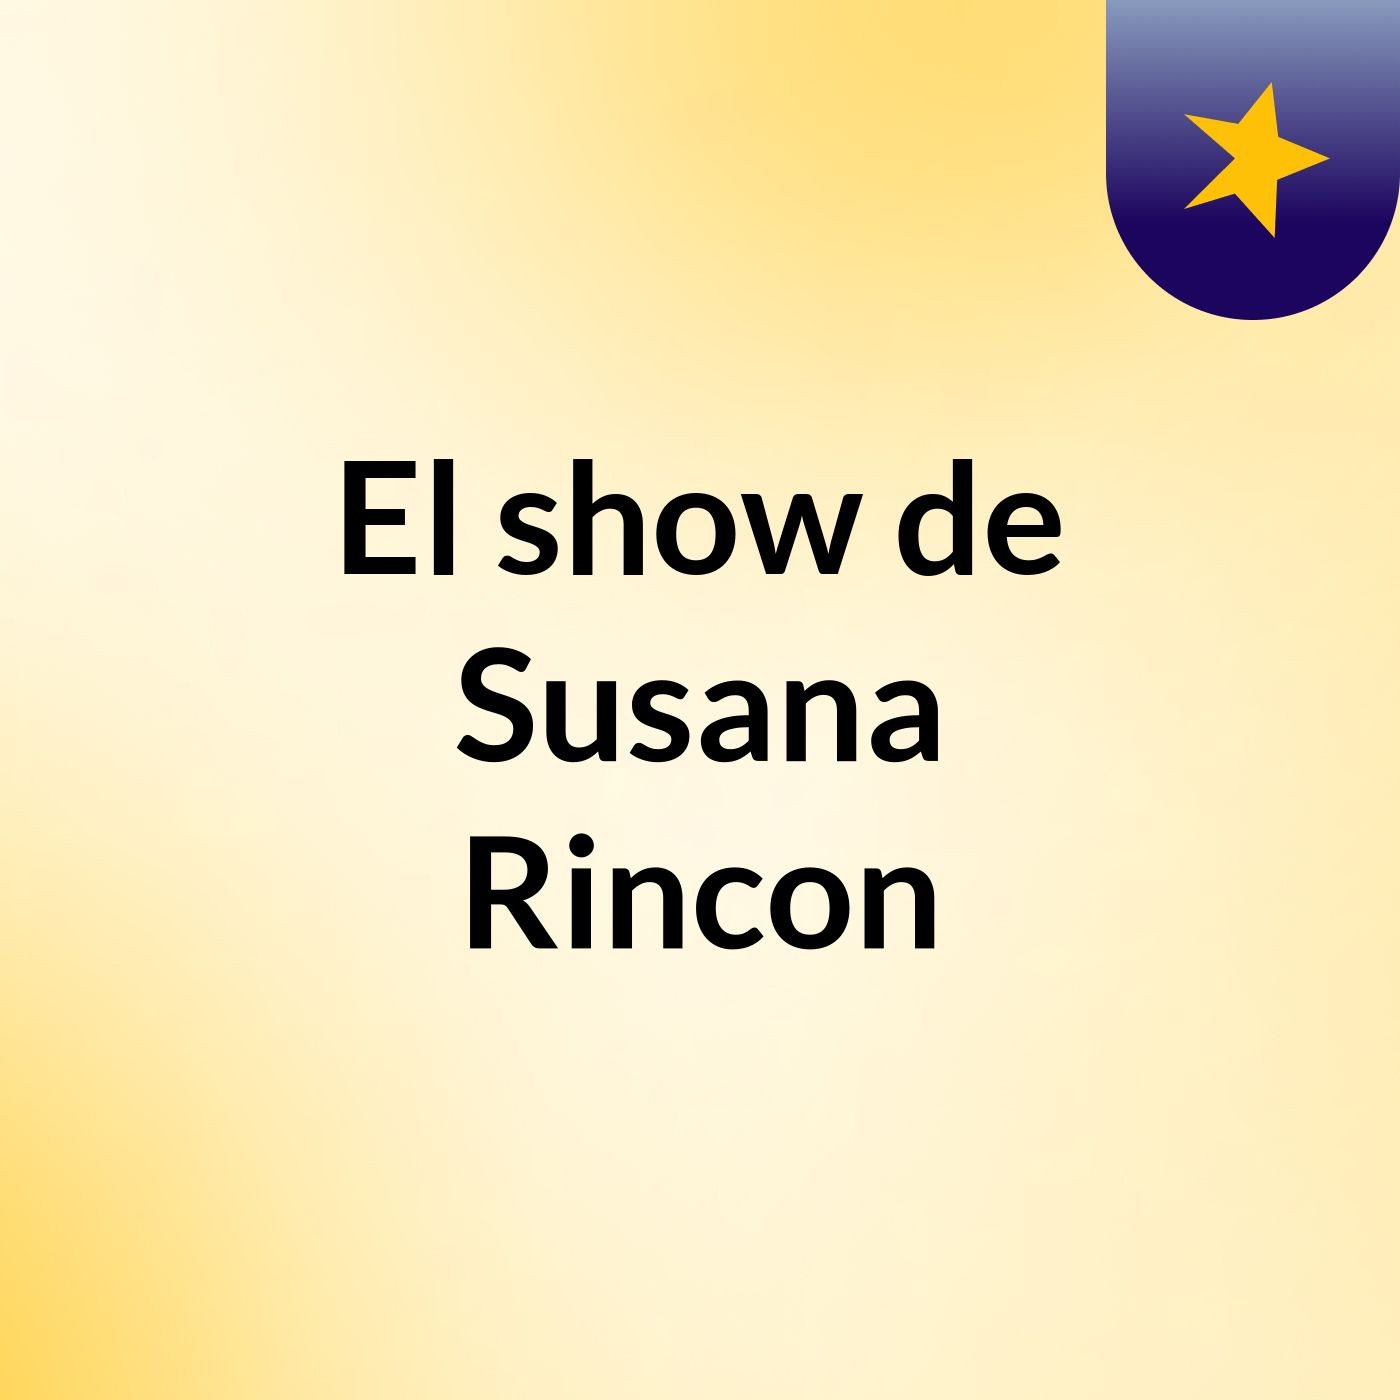 El show de Susana Rincon